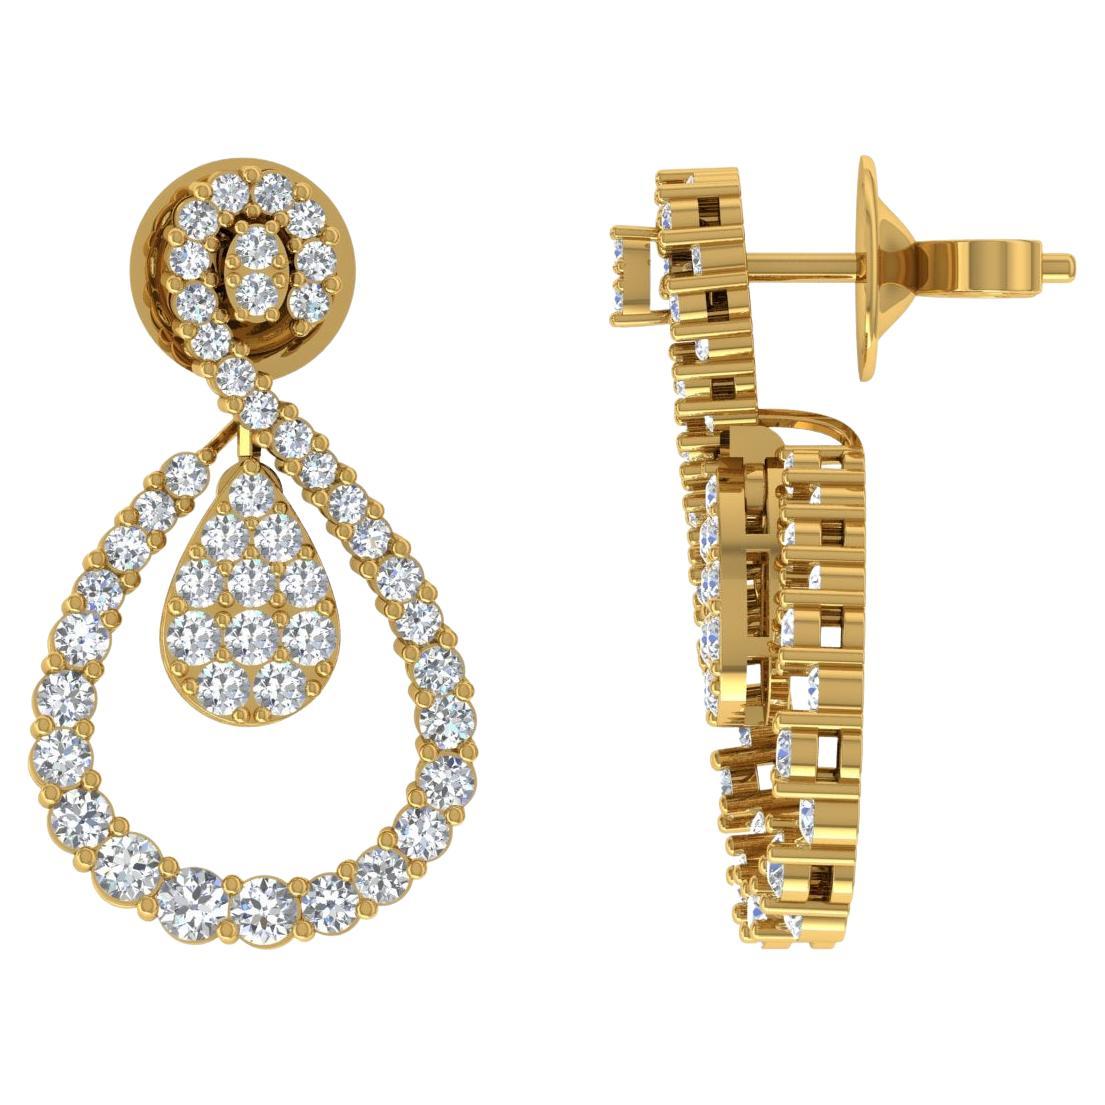 Pendants d'oreilles en or jaune 18 carats avec diamants ronds de 1,75 carat, fabrication artisanale